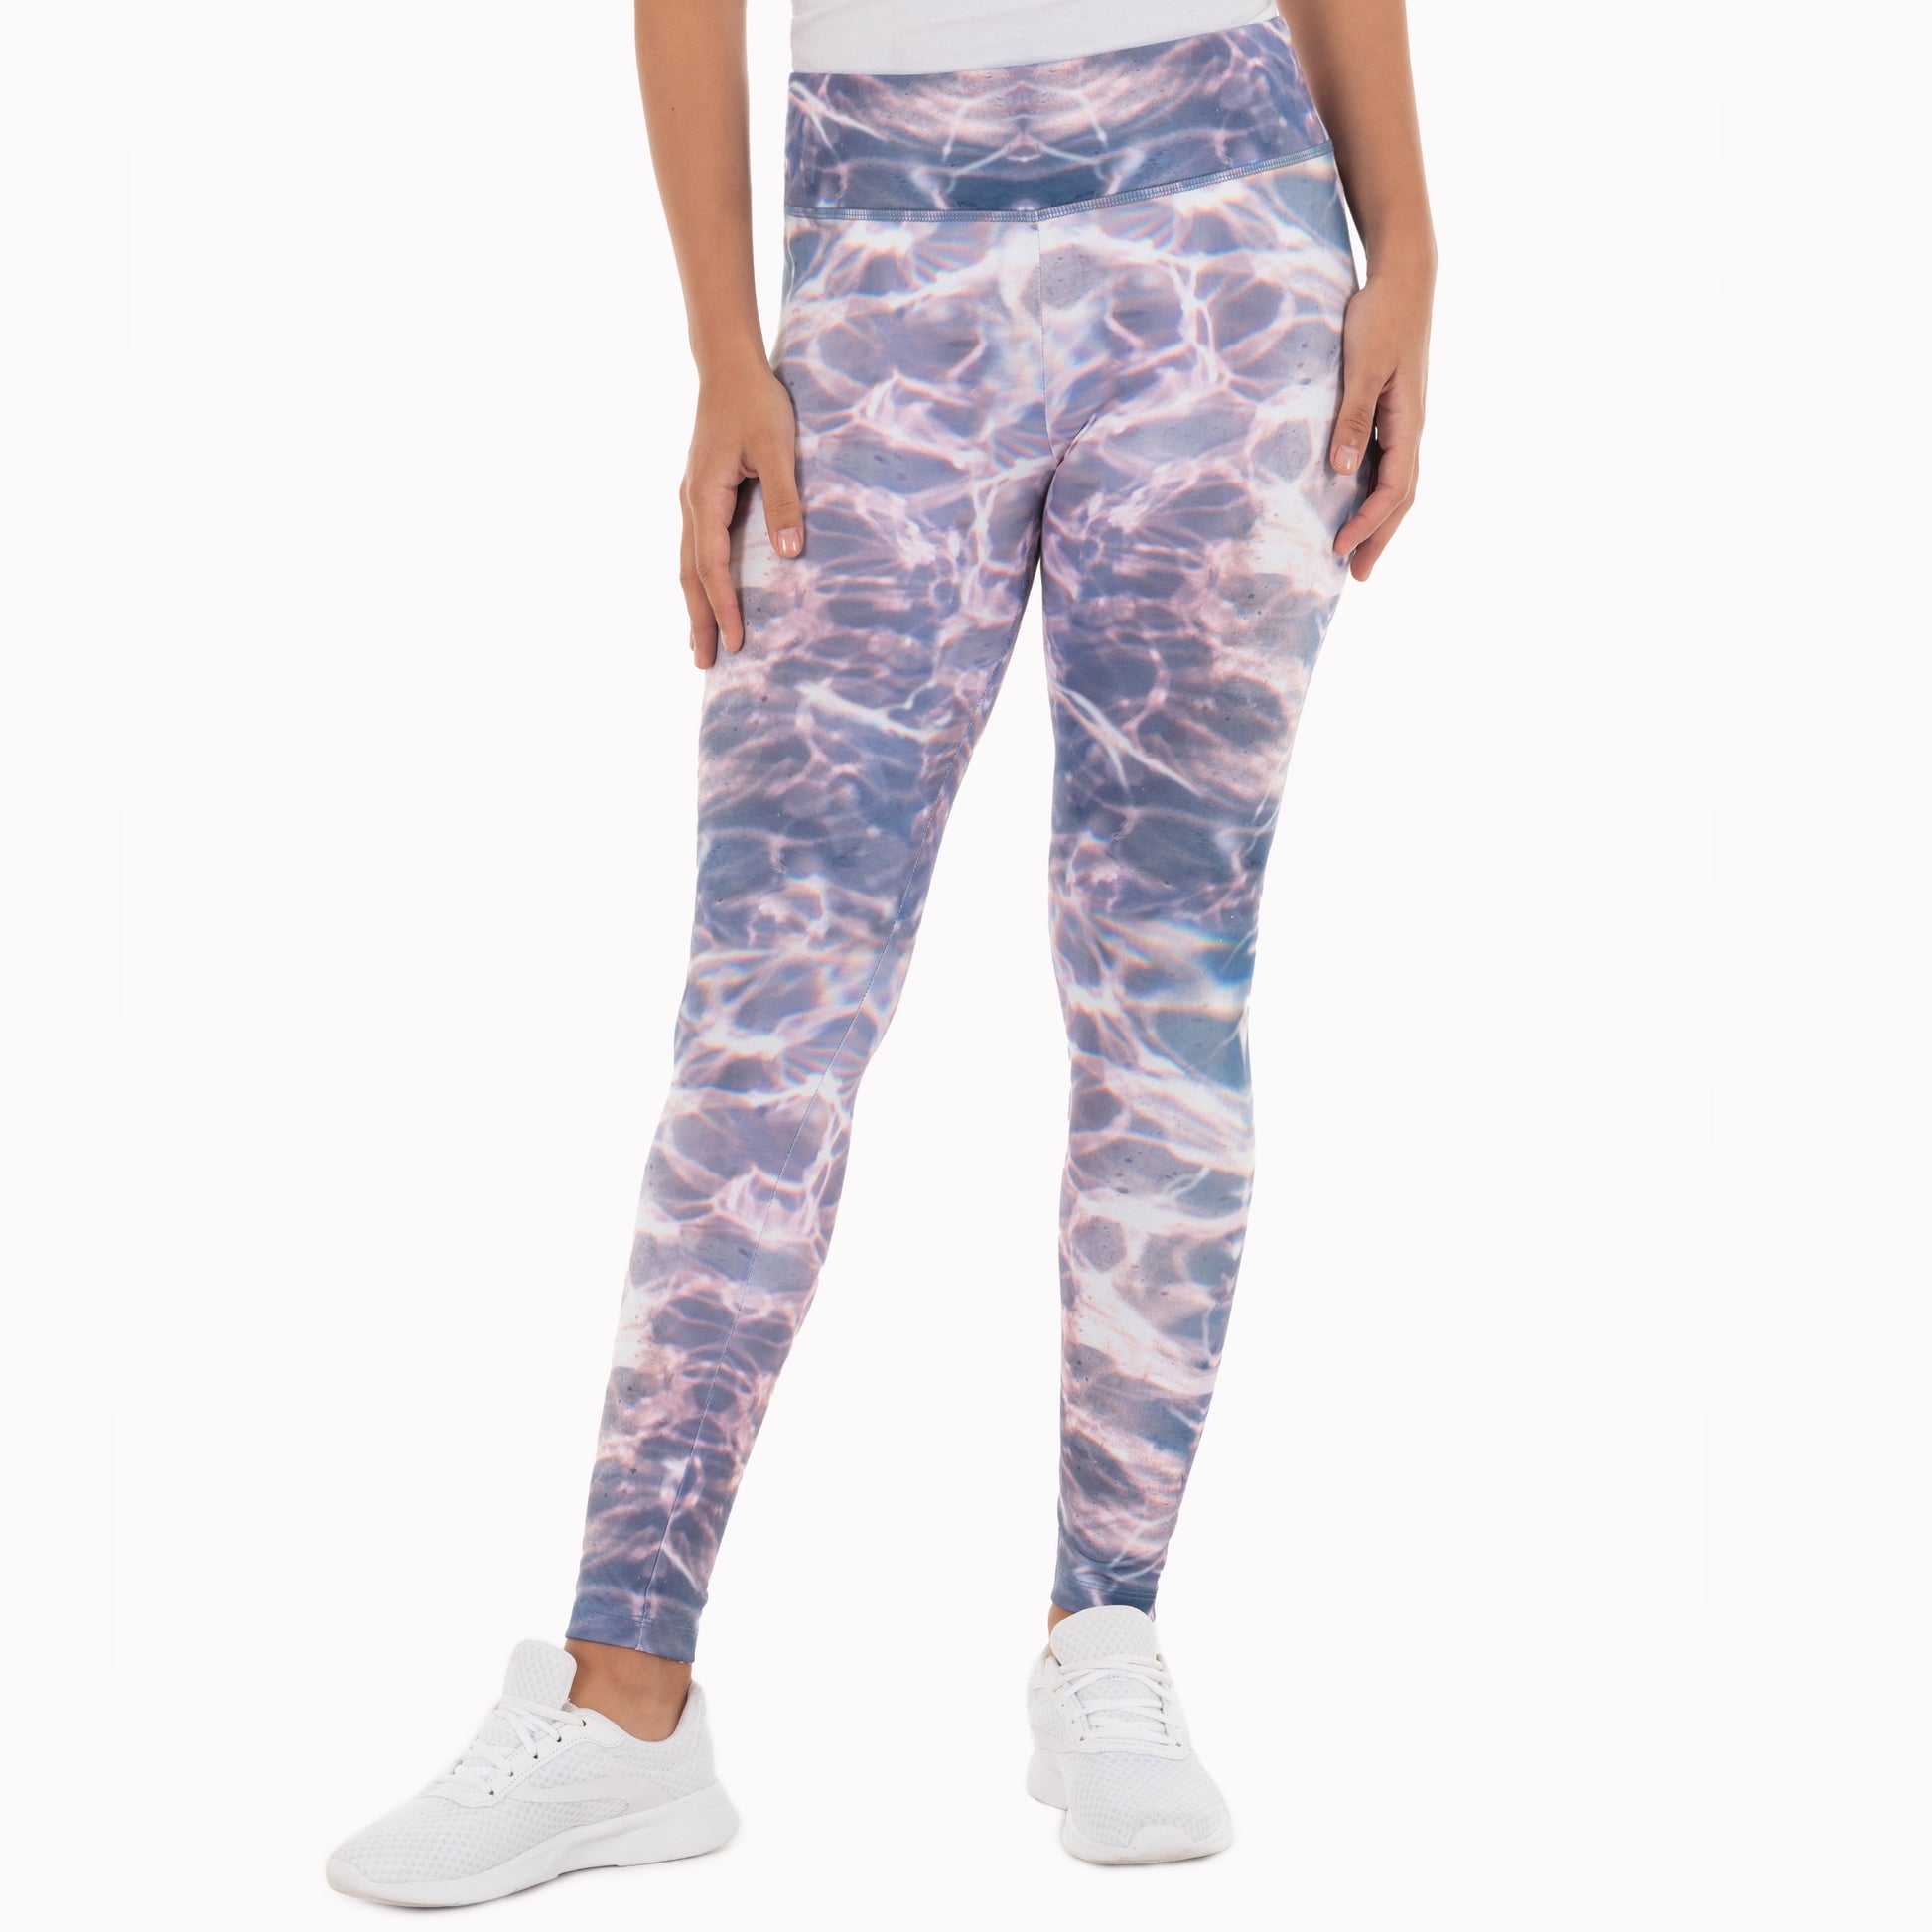 Women Summer Thin High-waist Yoga Biking Base Pants Pocket Fish Shark  Design Comfortable Casual Style